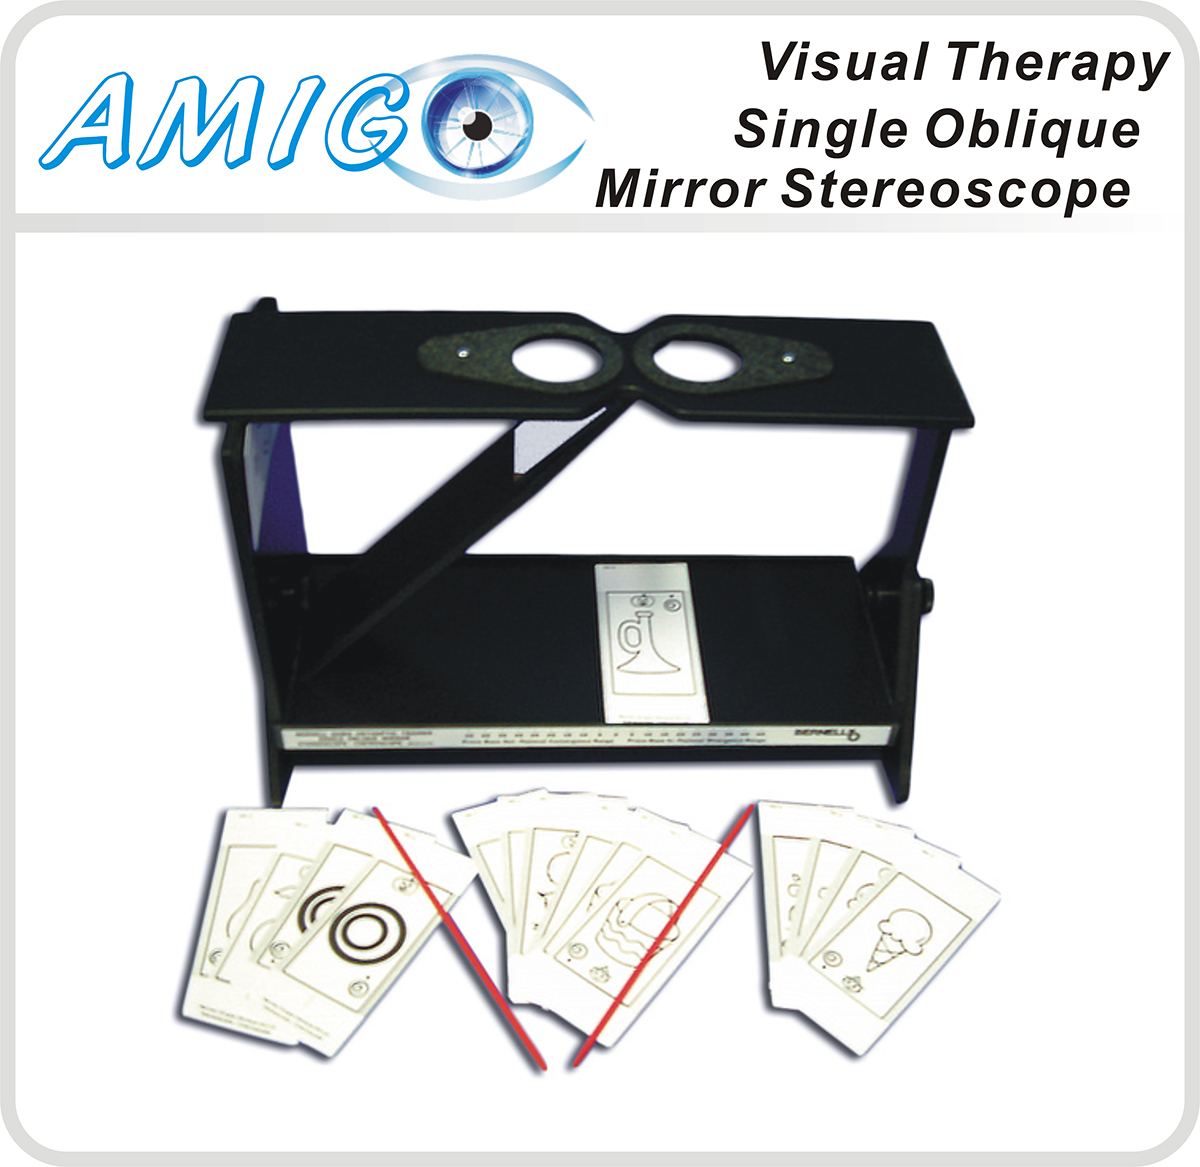 Single Oblique Stereoscope